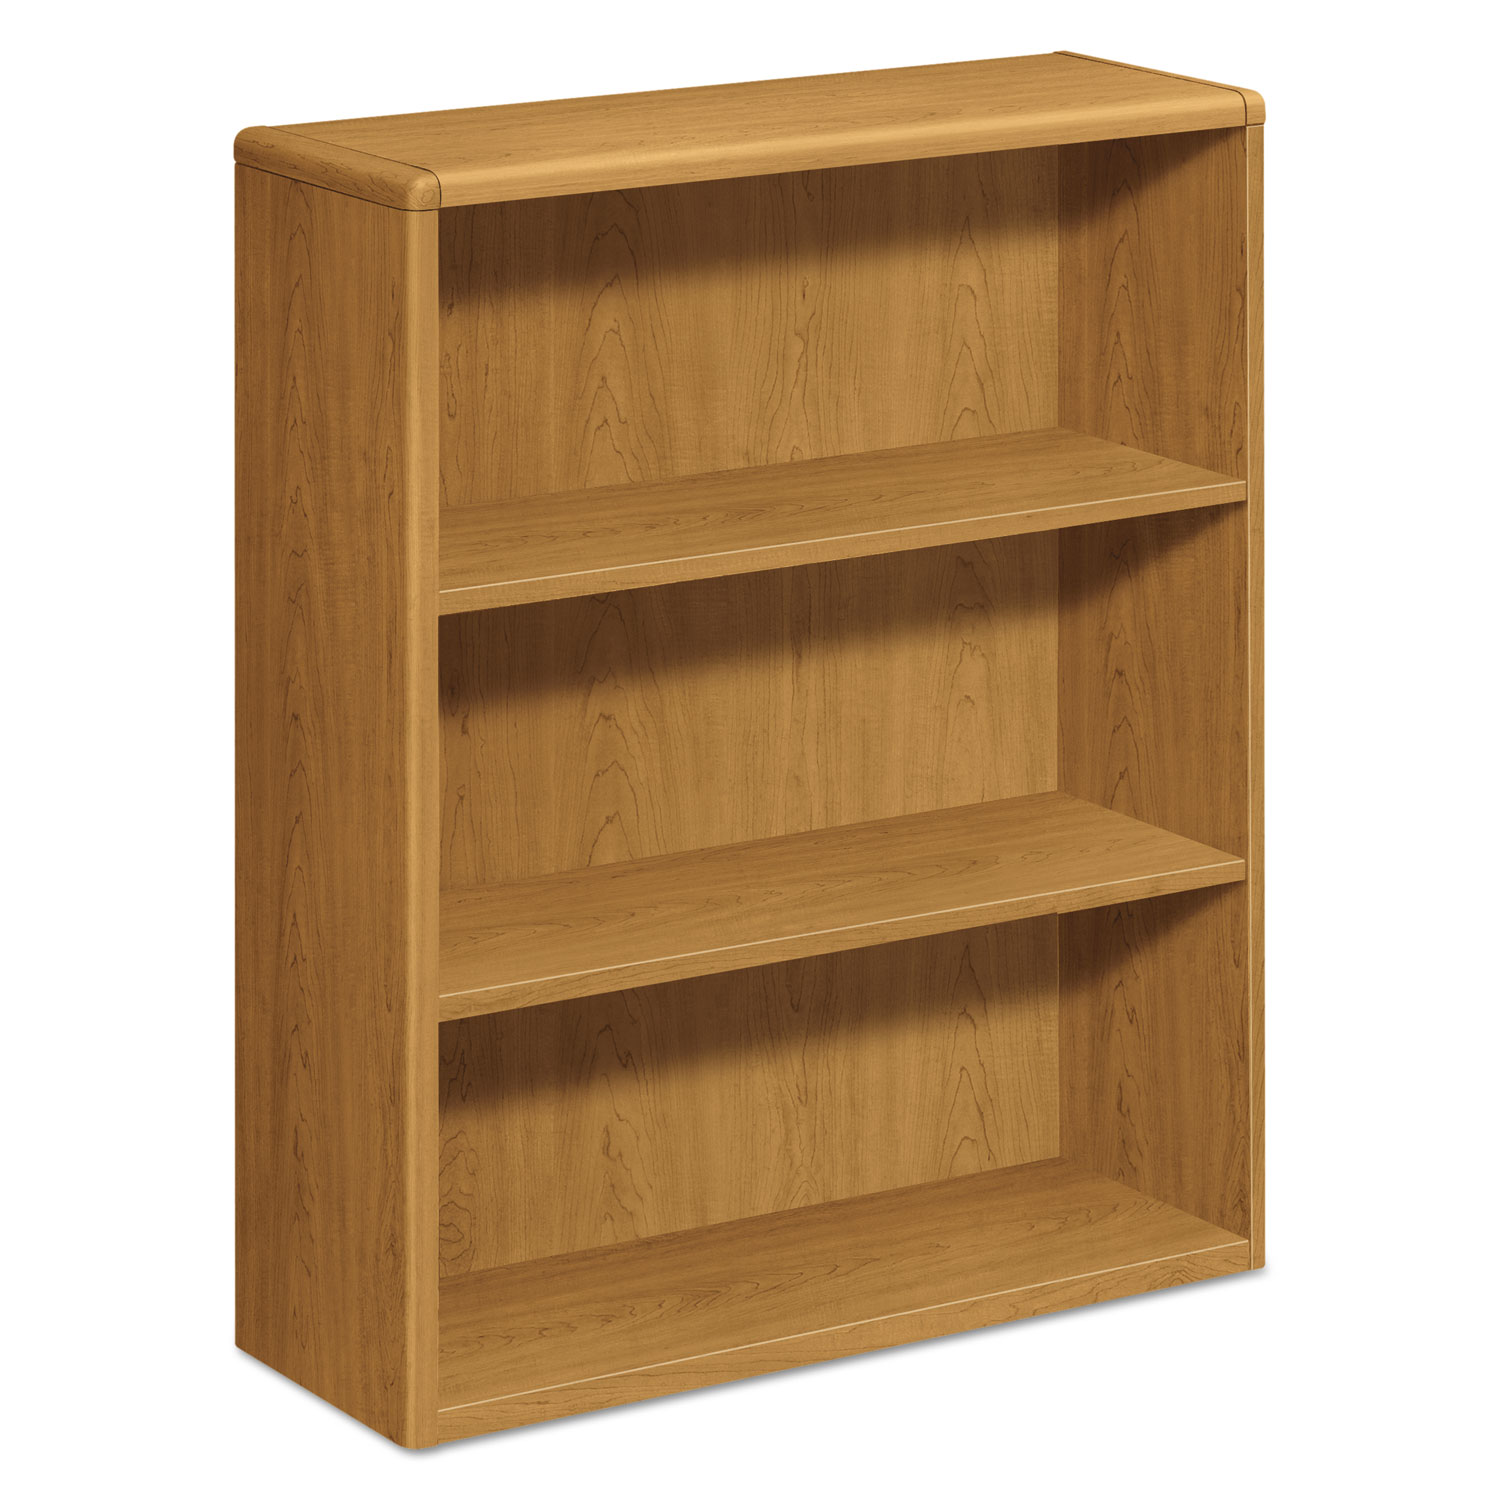 10700 Series Wood Bookcase, Three Shelf, 36w x 13 1/8d x 43 3/8h, Harvest